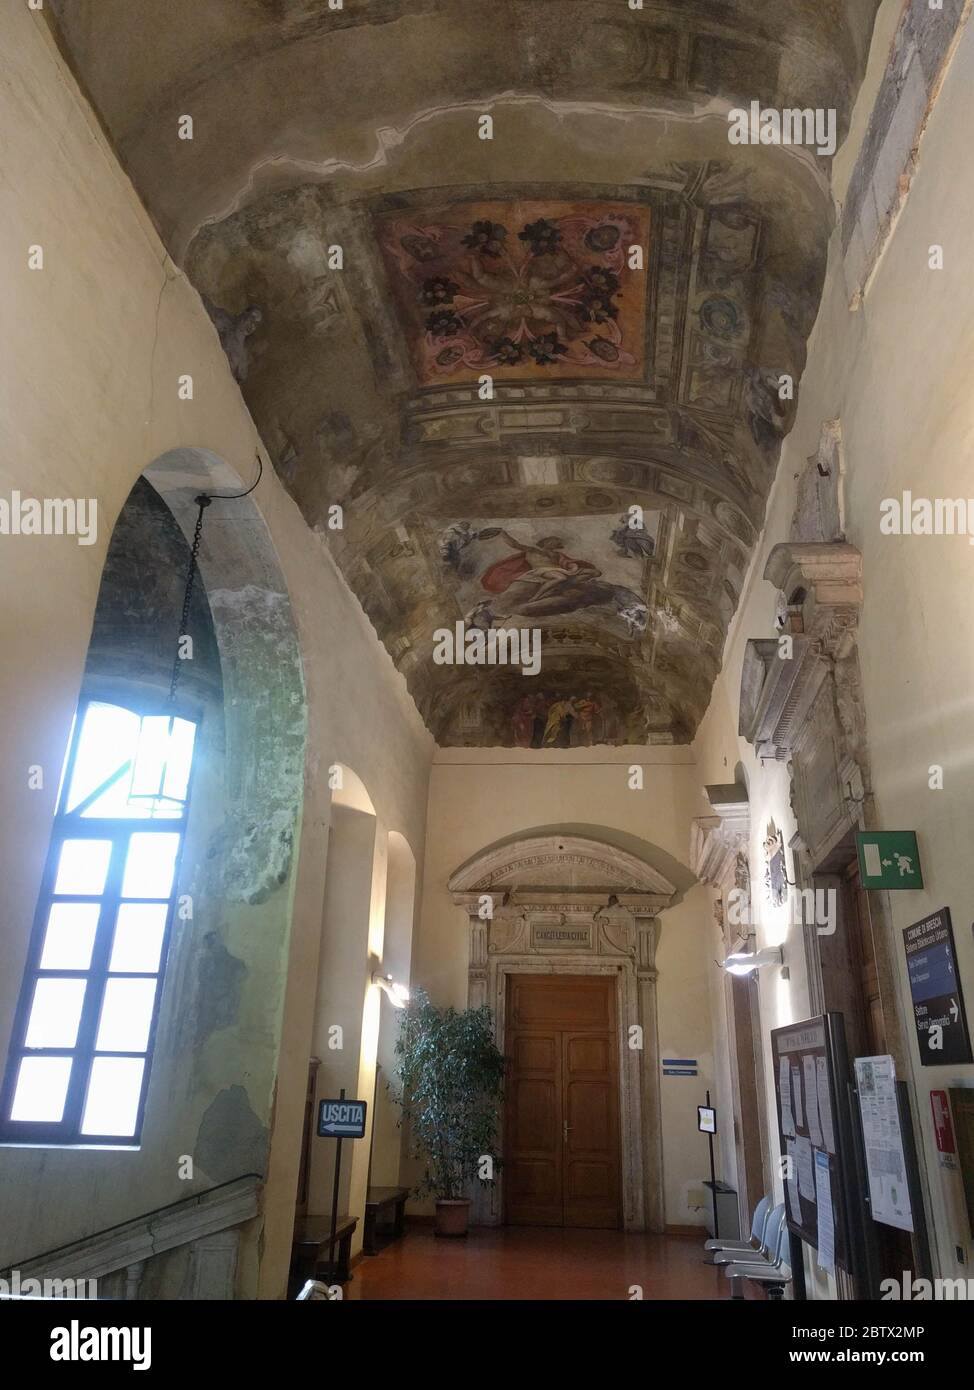 Lombardie, Italie - janvier 08 2018: La vue de la fresque de plafond à l'intérieur du Palazzo del Broletto le 08 2018 janvier, Brescia, Italie. Banque D'Images